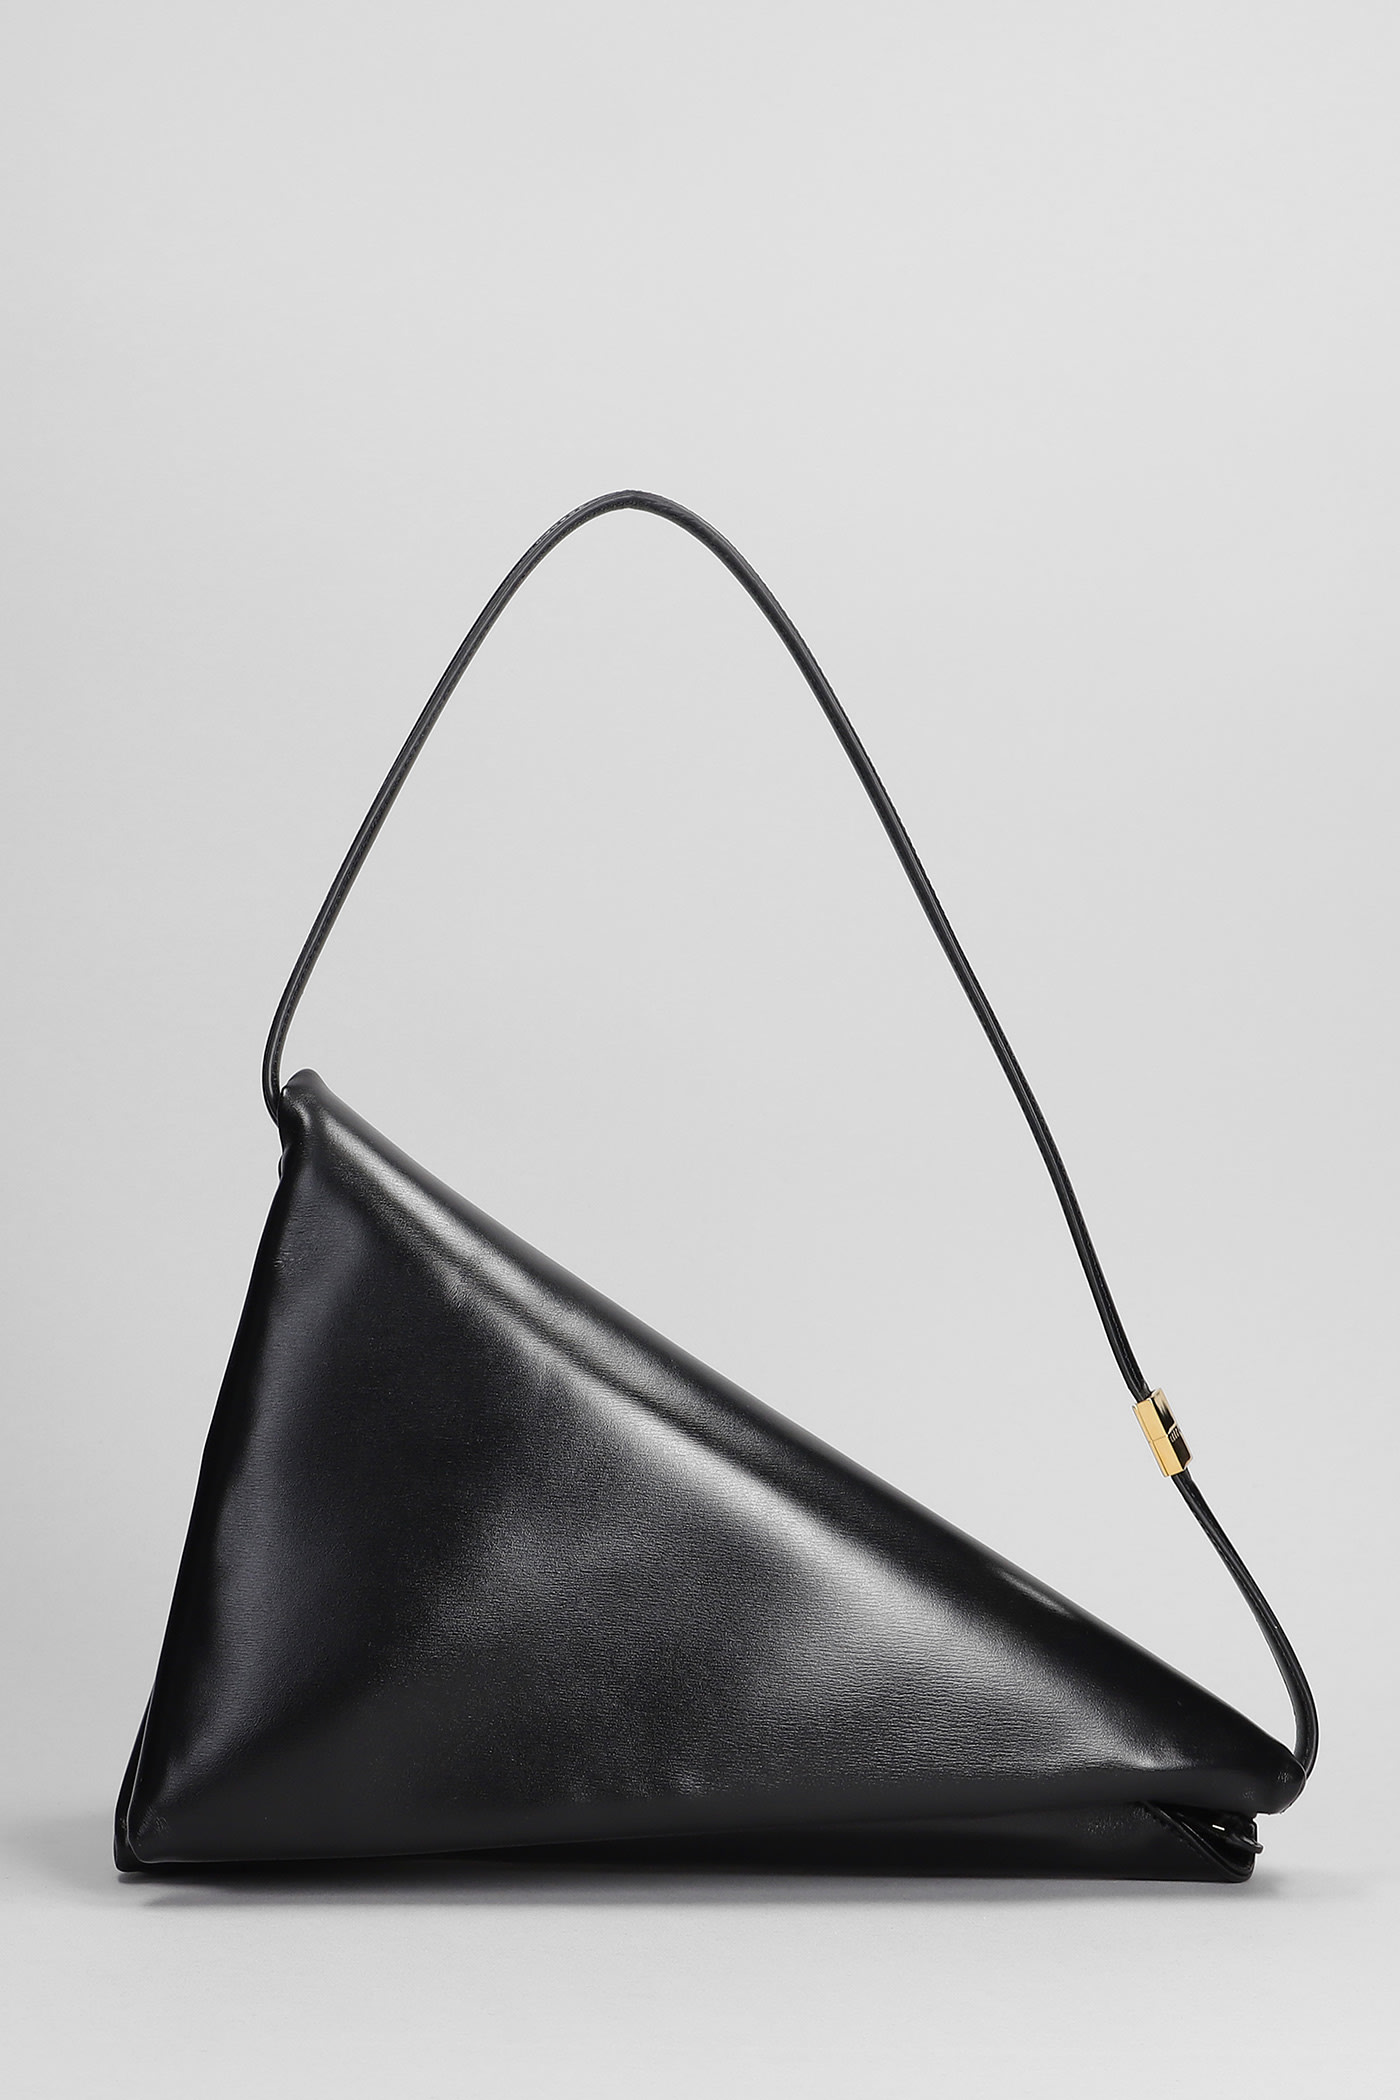 Marni Shoulder Bag In Black Leather